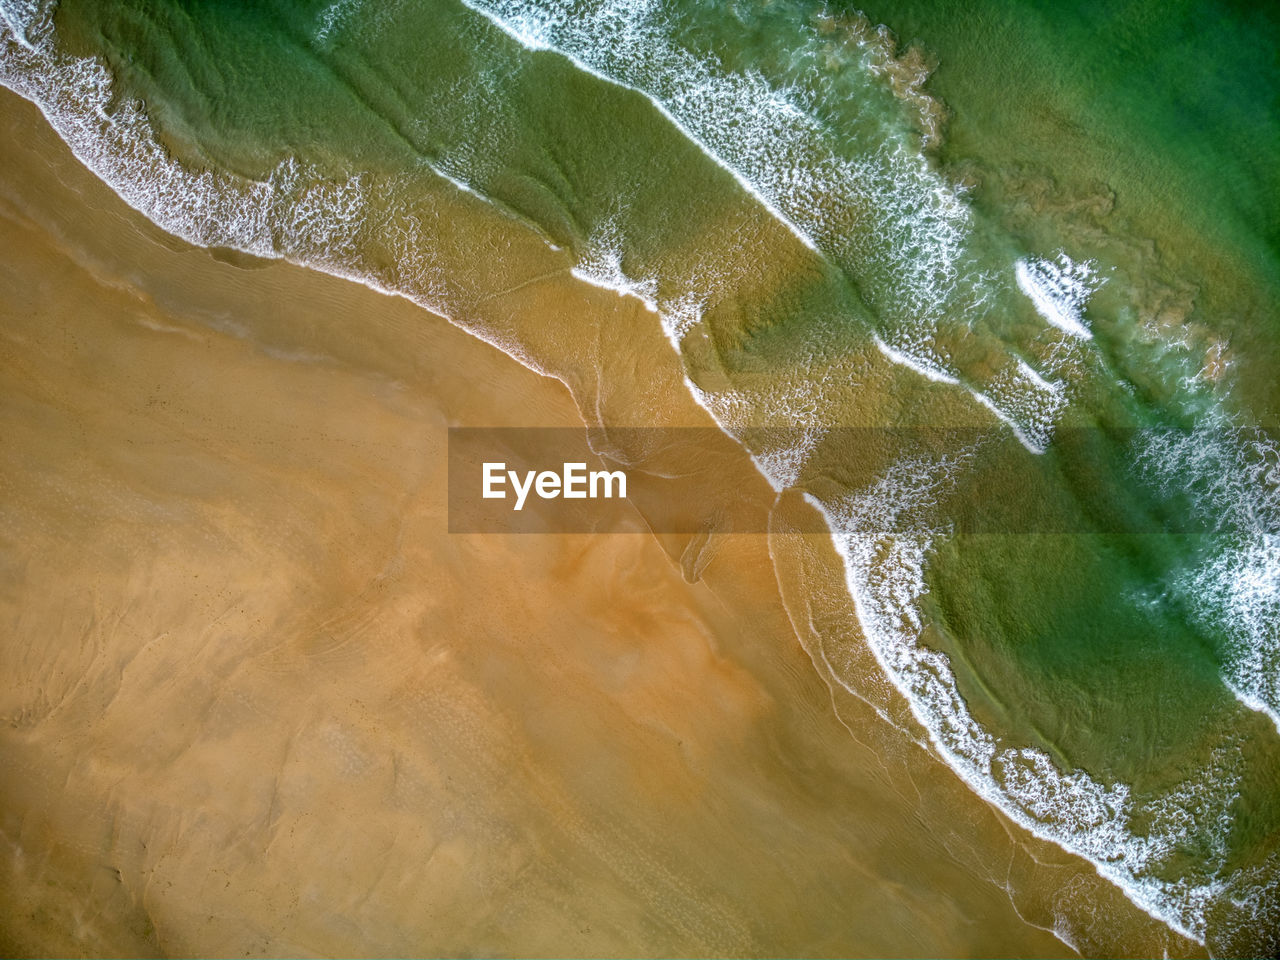 Aerial view of el palmar beach in vejer de la frontera, cadiz in spain.